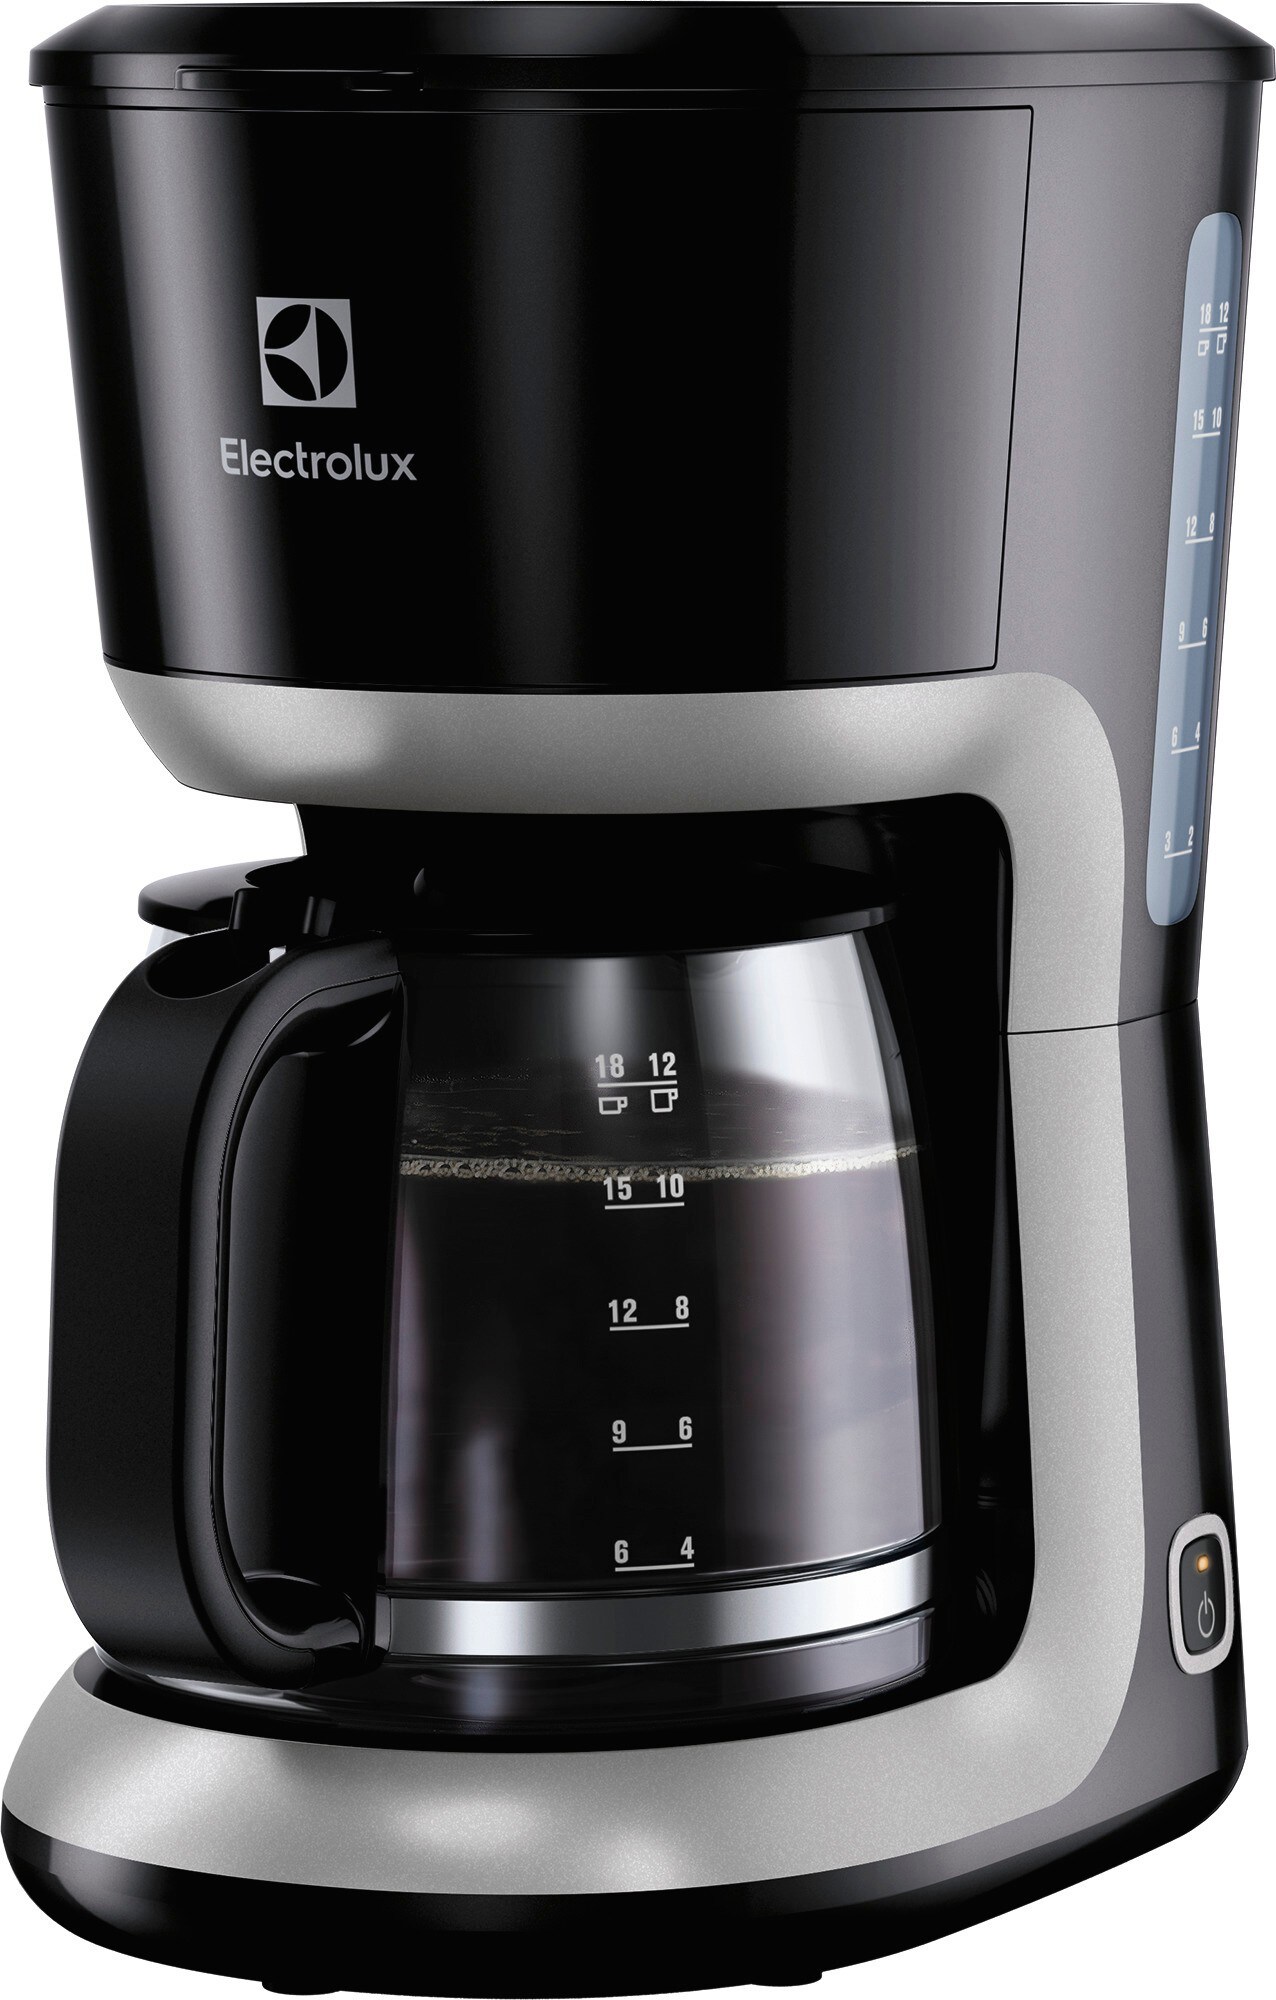 Electrolux Eloisa kaffemaskine EKF3300 (sort) | Elgiganten